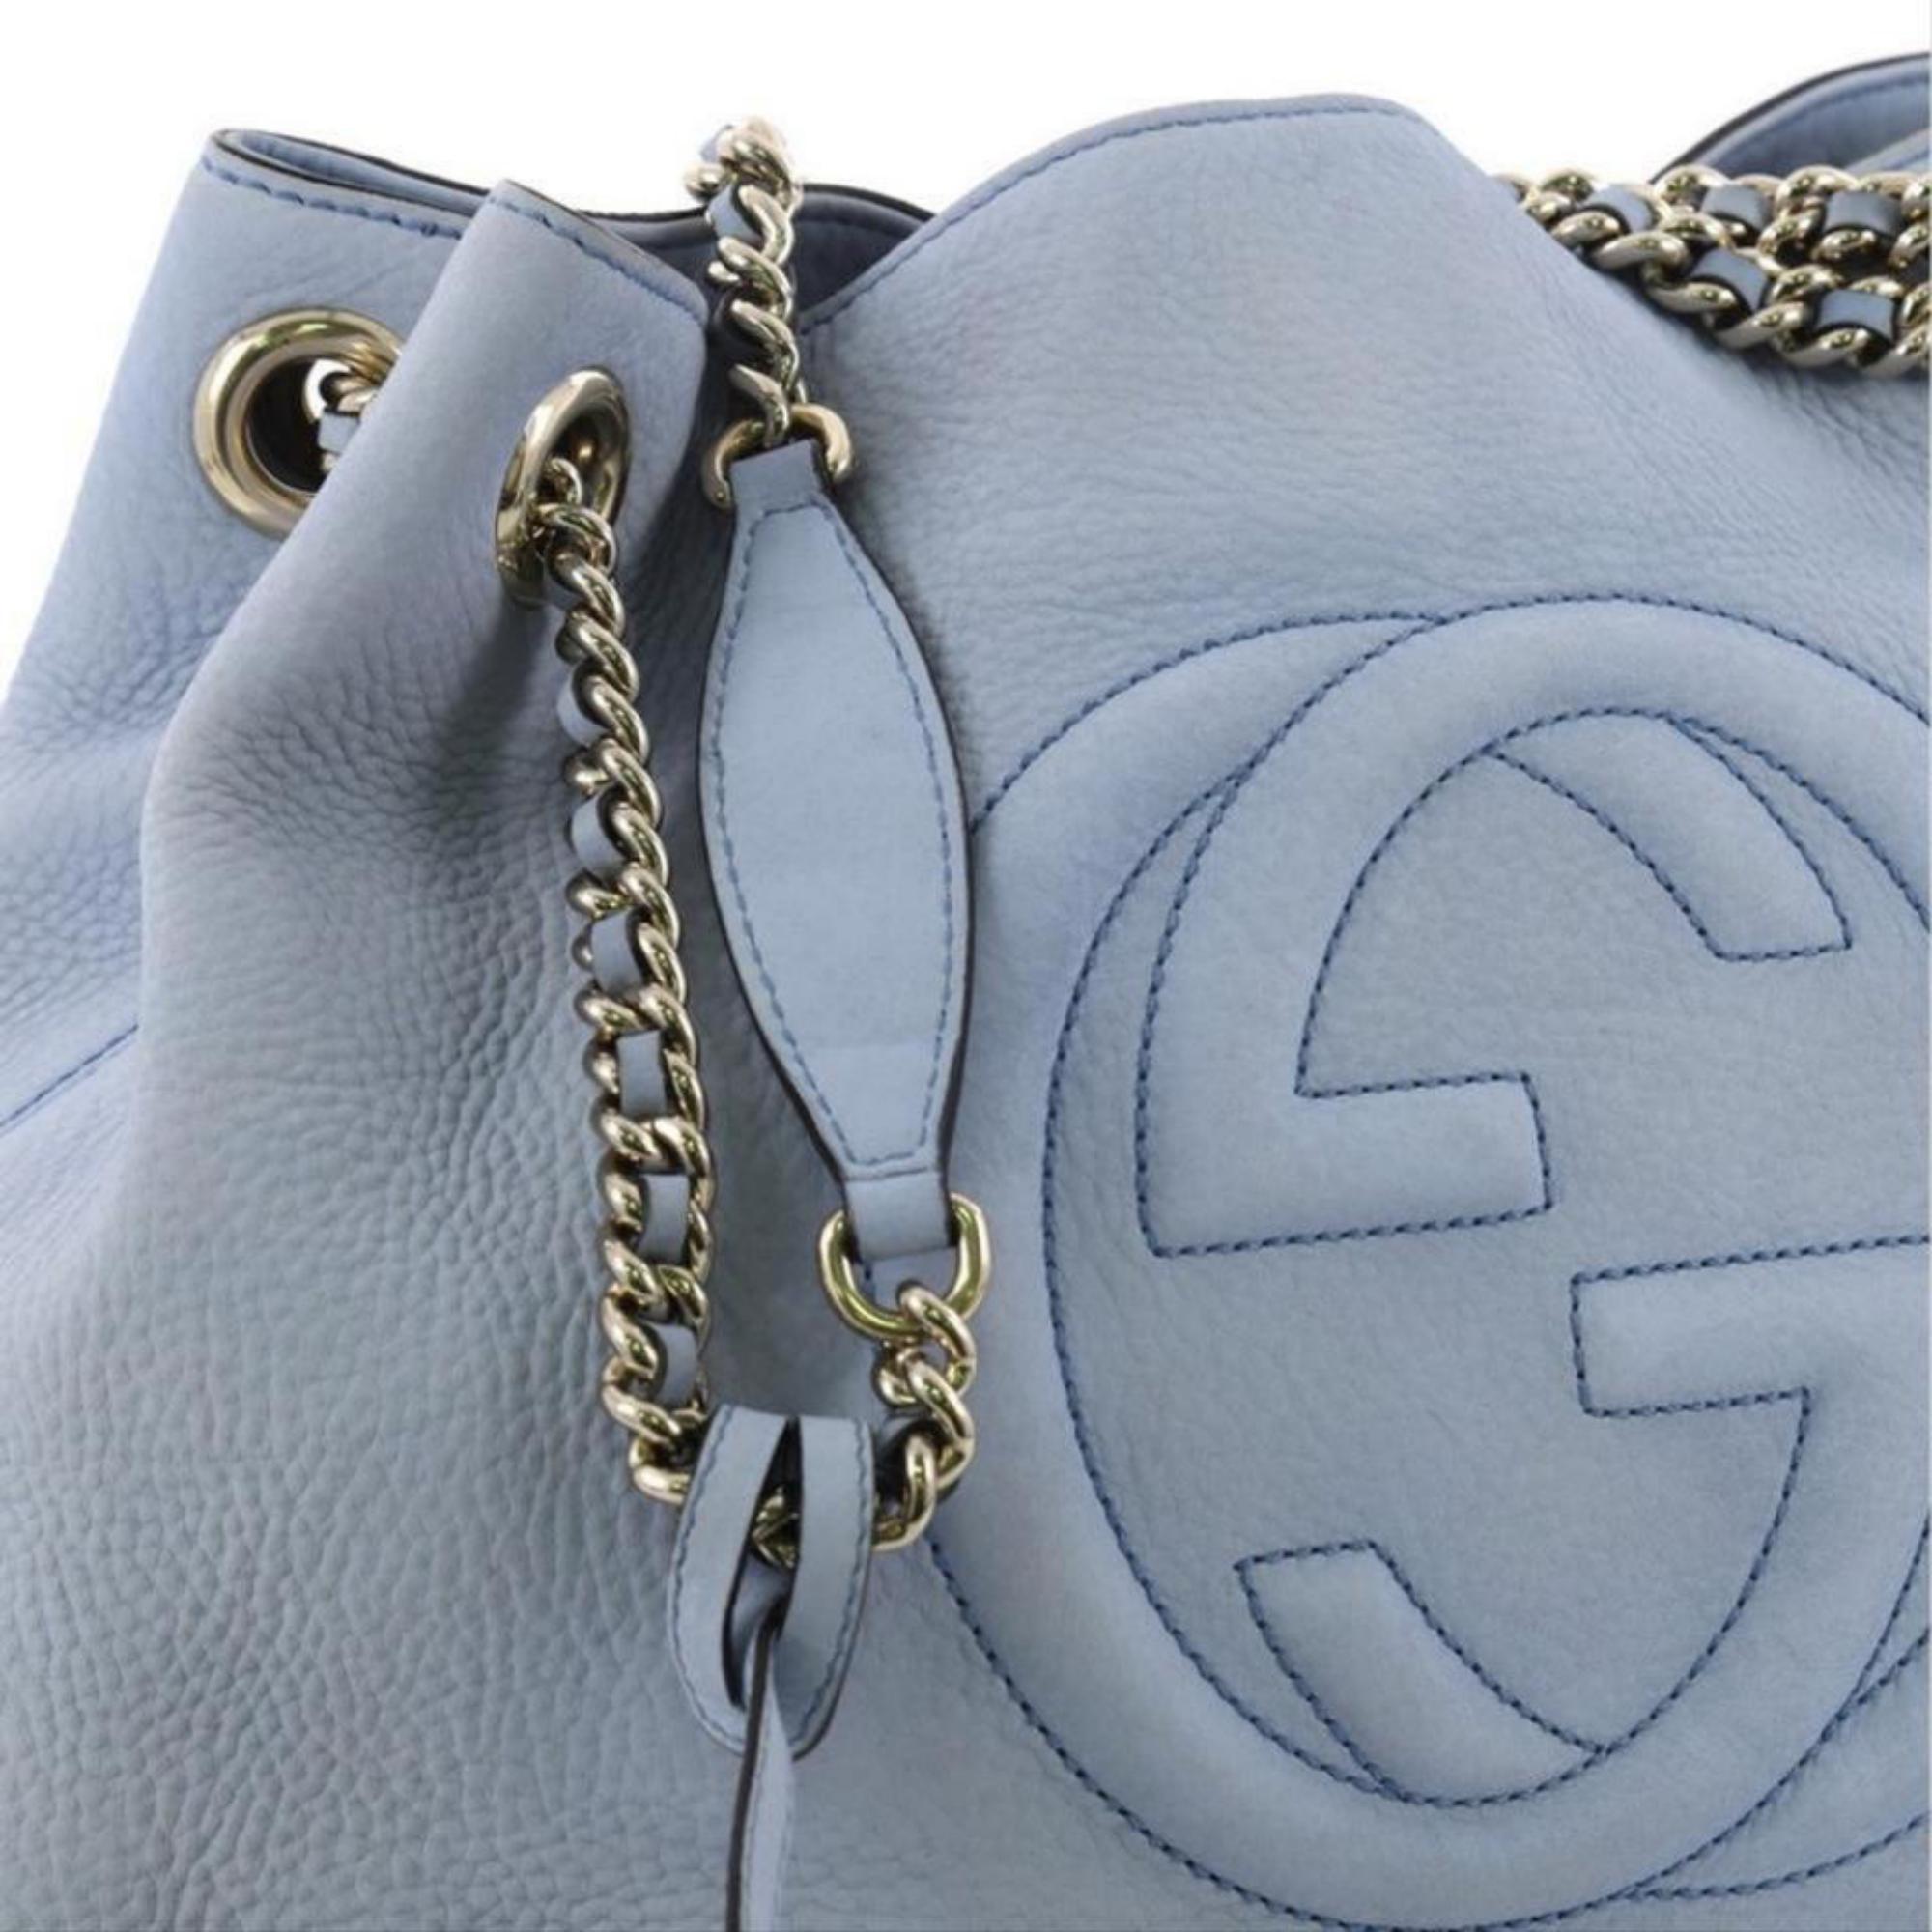 Gucci Soho Fringe Tassel Chain Tote 869083 Light Blue Leather Shoulder Bag For Sale 2